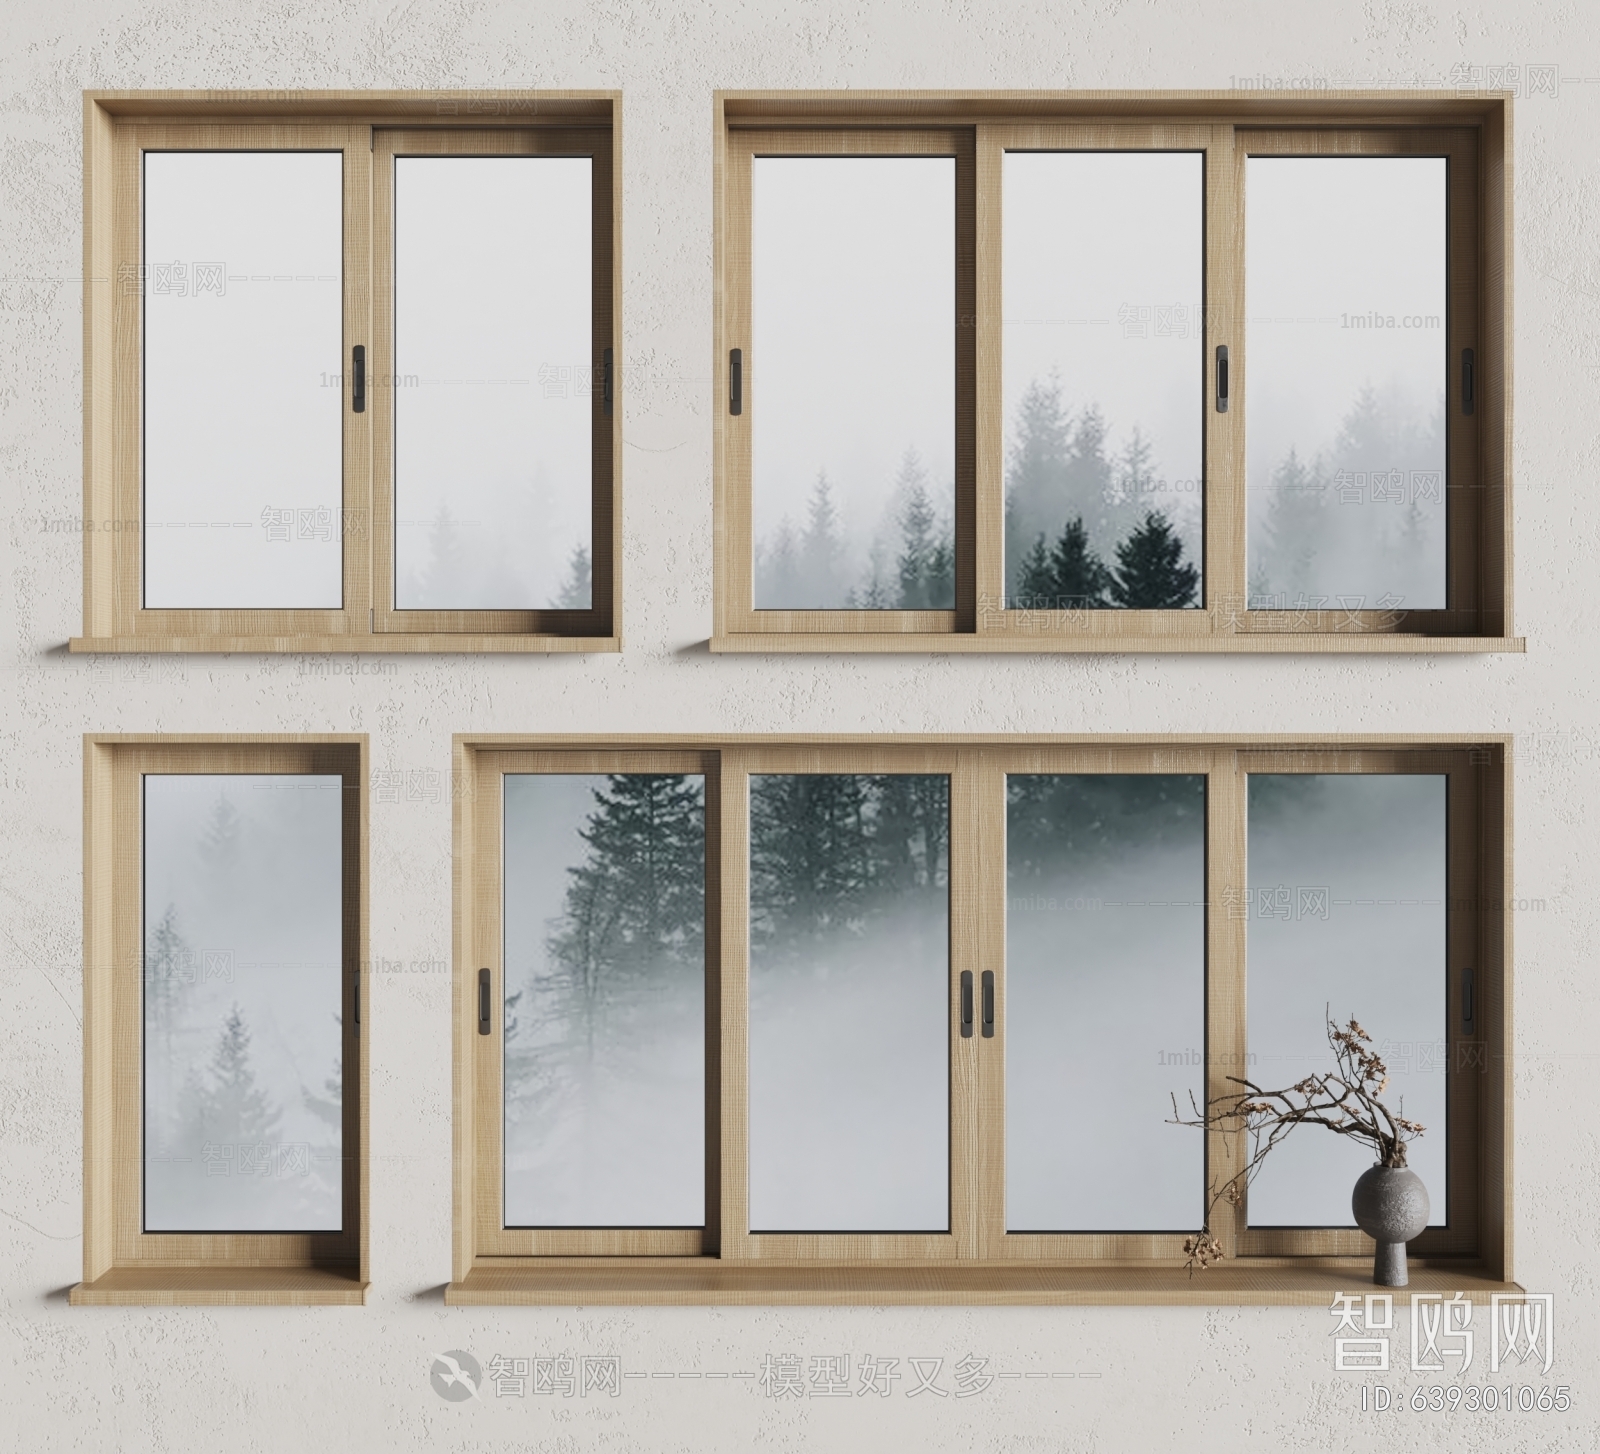 Wabi-sabi Style Window